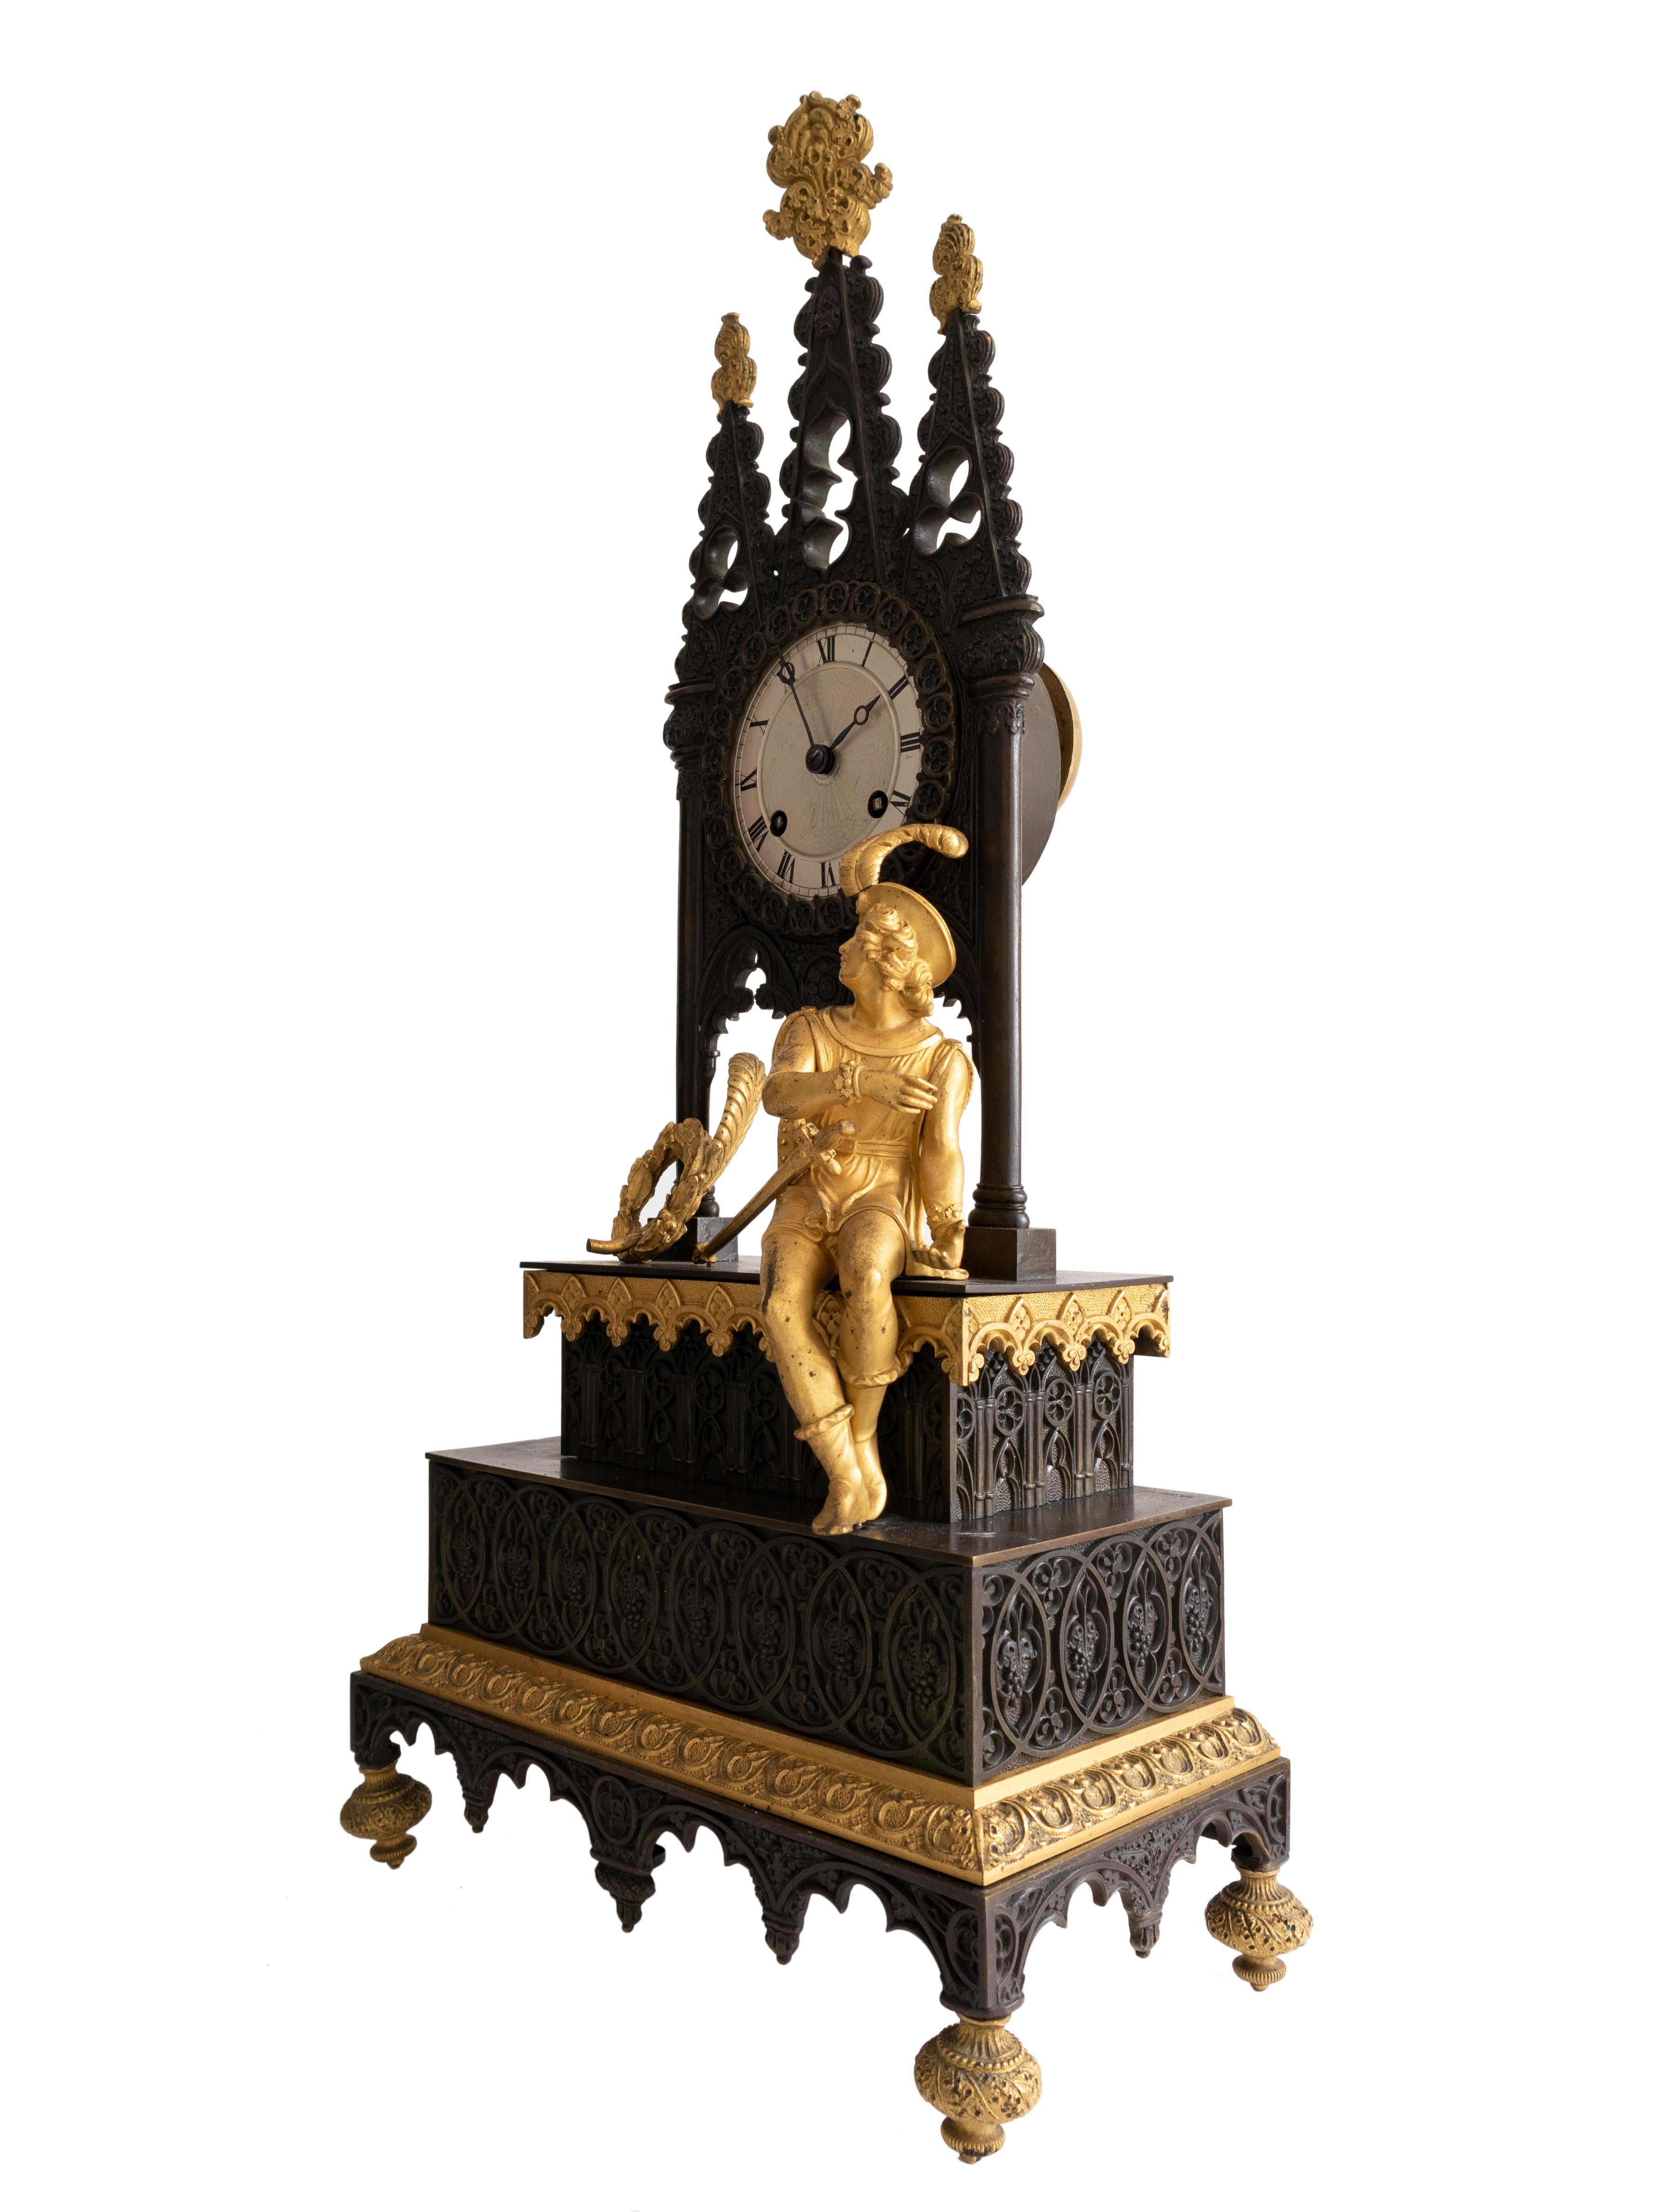 Eine Pendeluhr aus Bronze im Stil des Biedermeier mit schwarzer Patina und vergoldetem Messing, verziert mit gotischen Bögen und einem Harfenspieler.
Es handelt sich um eine vollständig skulptierte, stark vergoldete Bronze mit weißem